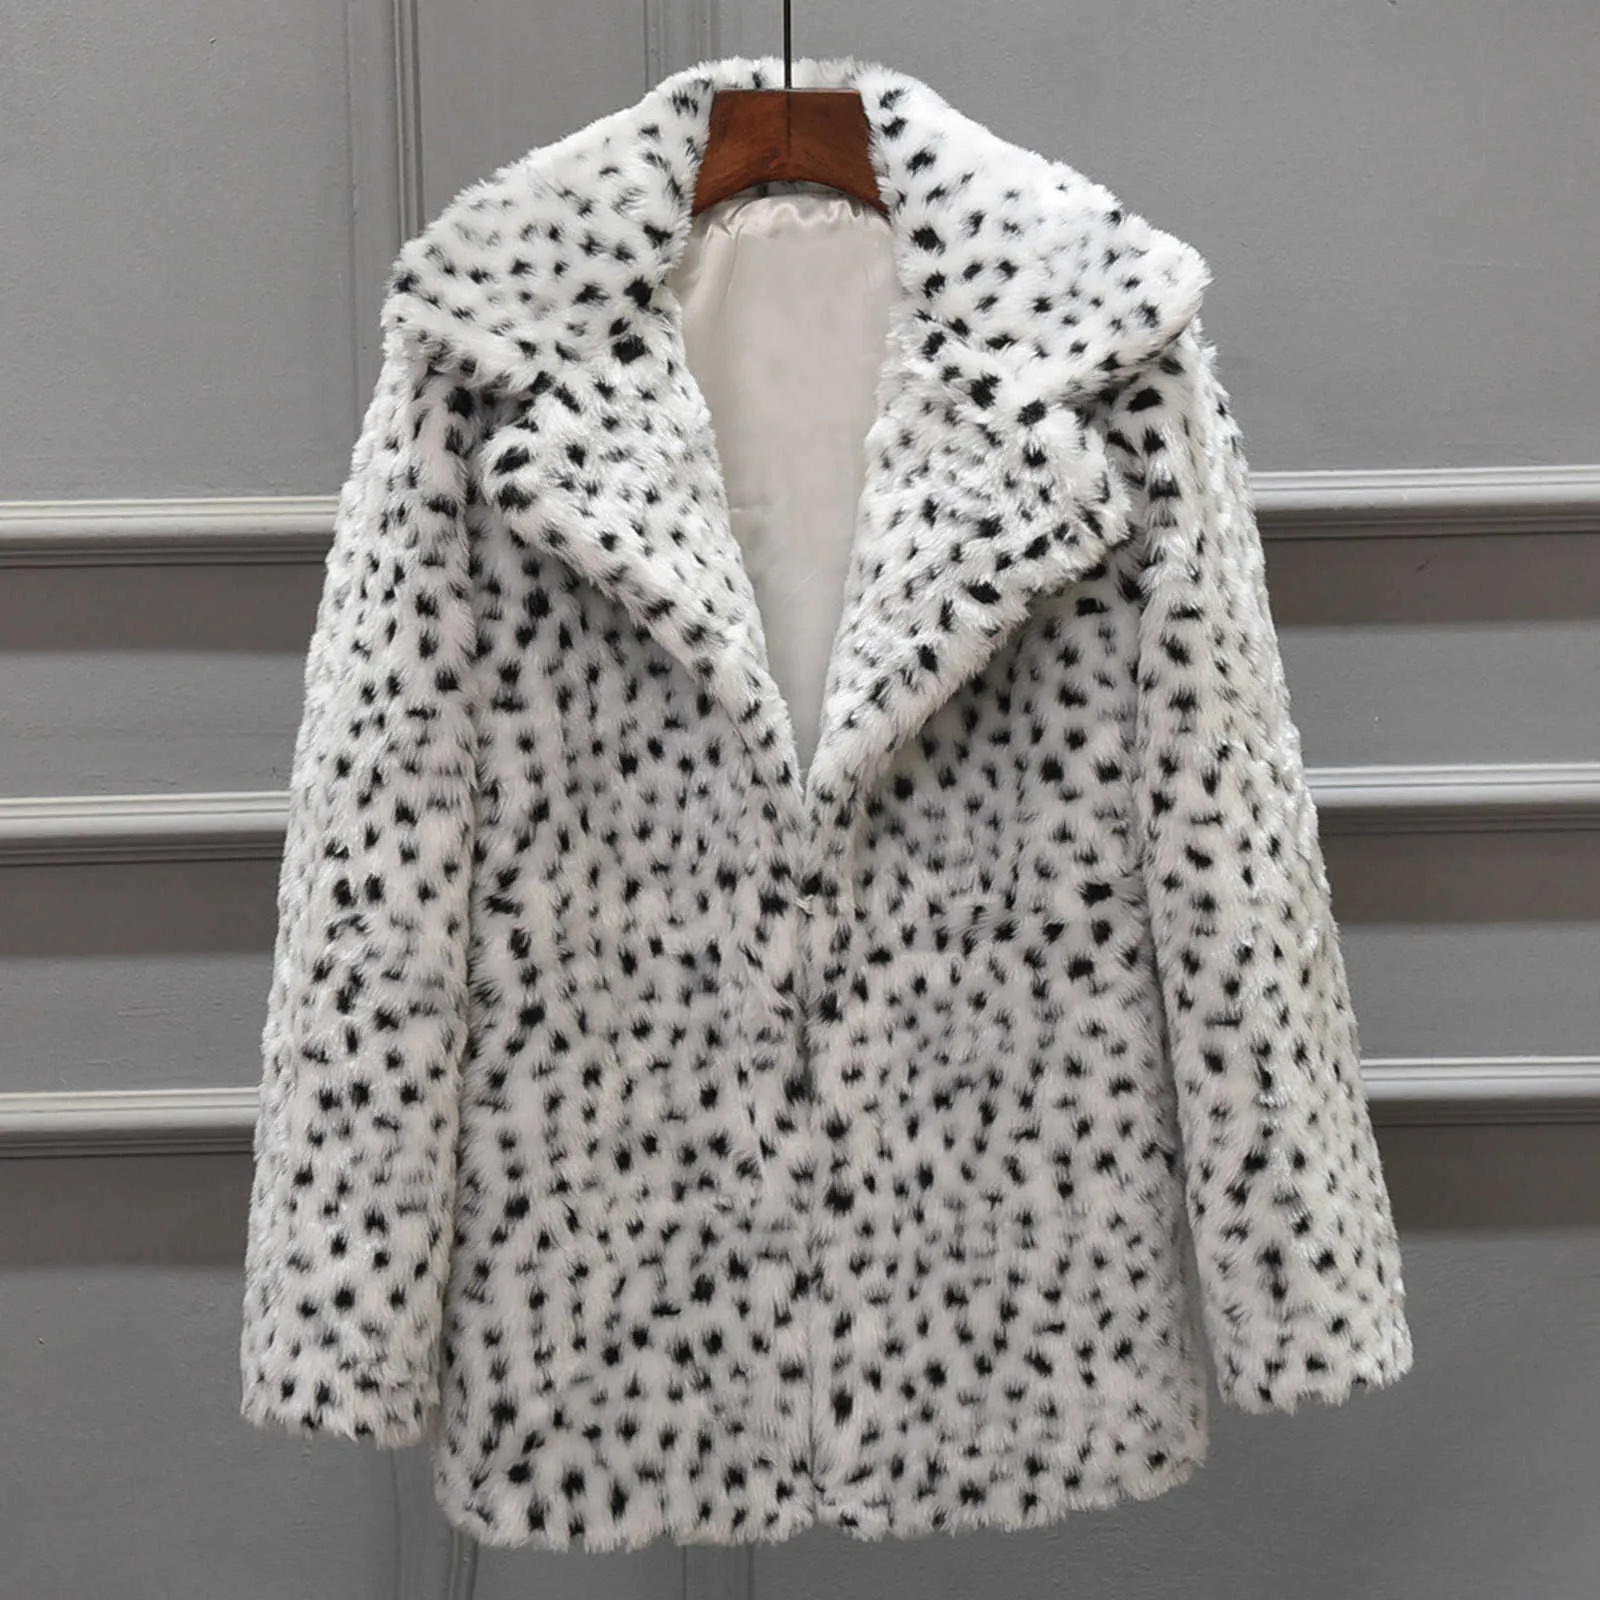 Automne hiver manteau femmes mode imprimé léopard lâche court coupe-vent agneau fausse fourrure manteau fourrure élégant vestes femme pardessus Y0829